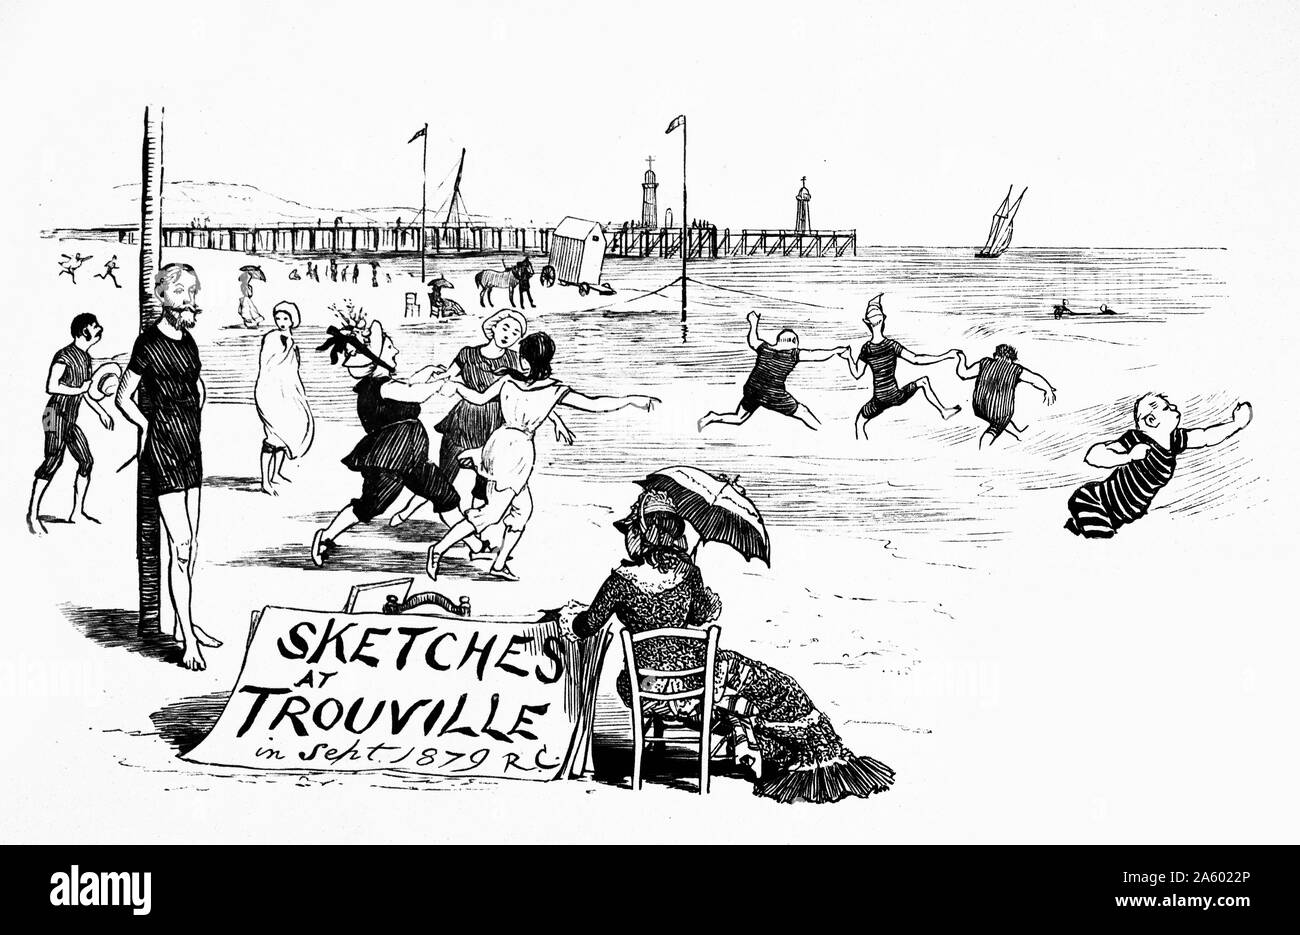 L'illustration montre le français les personnes bénéficiant de l'été sur le Trouville-sur-Mer beach. Une foule de personnes sont montrées jouant dans la mer, tandis que d'une figure féminine propose des croquis au premier plan. Datée 1877 Banque D'Images